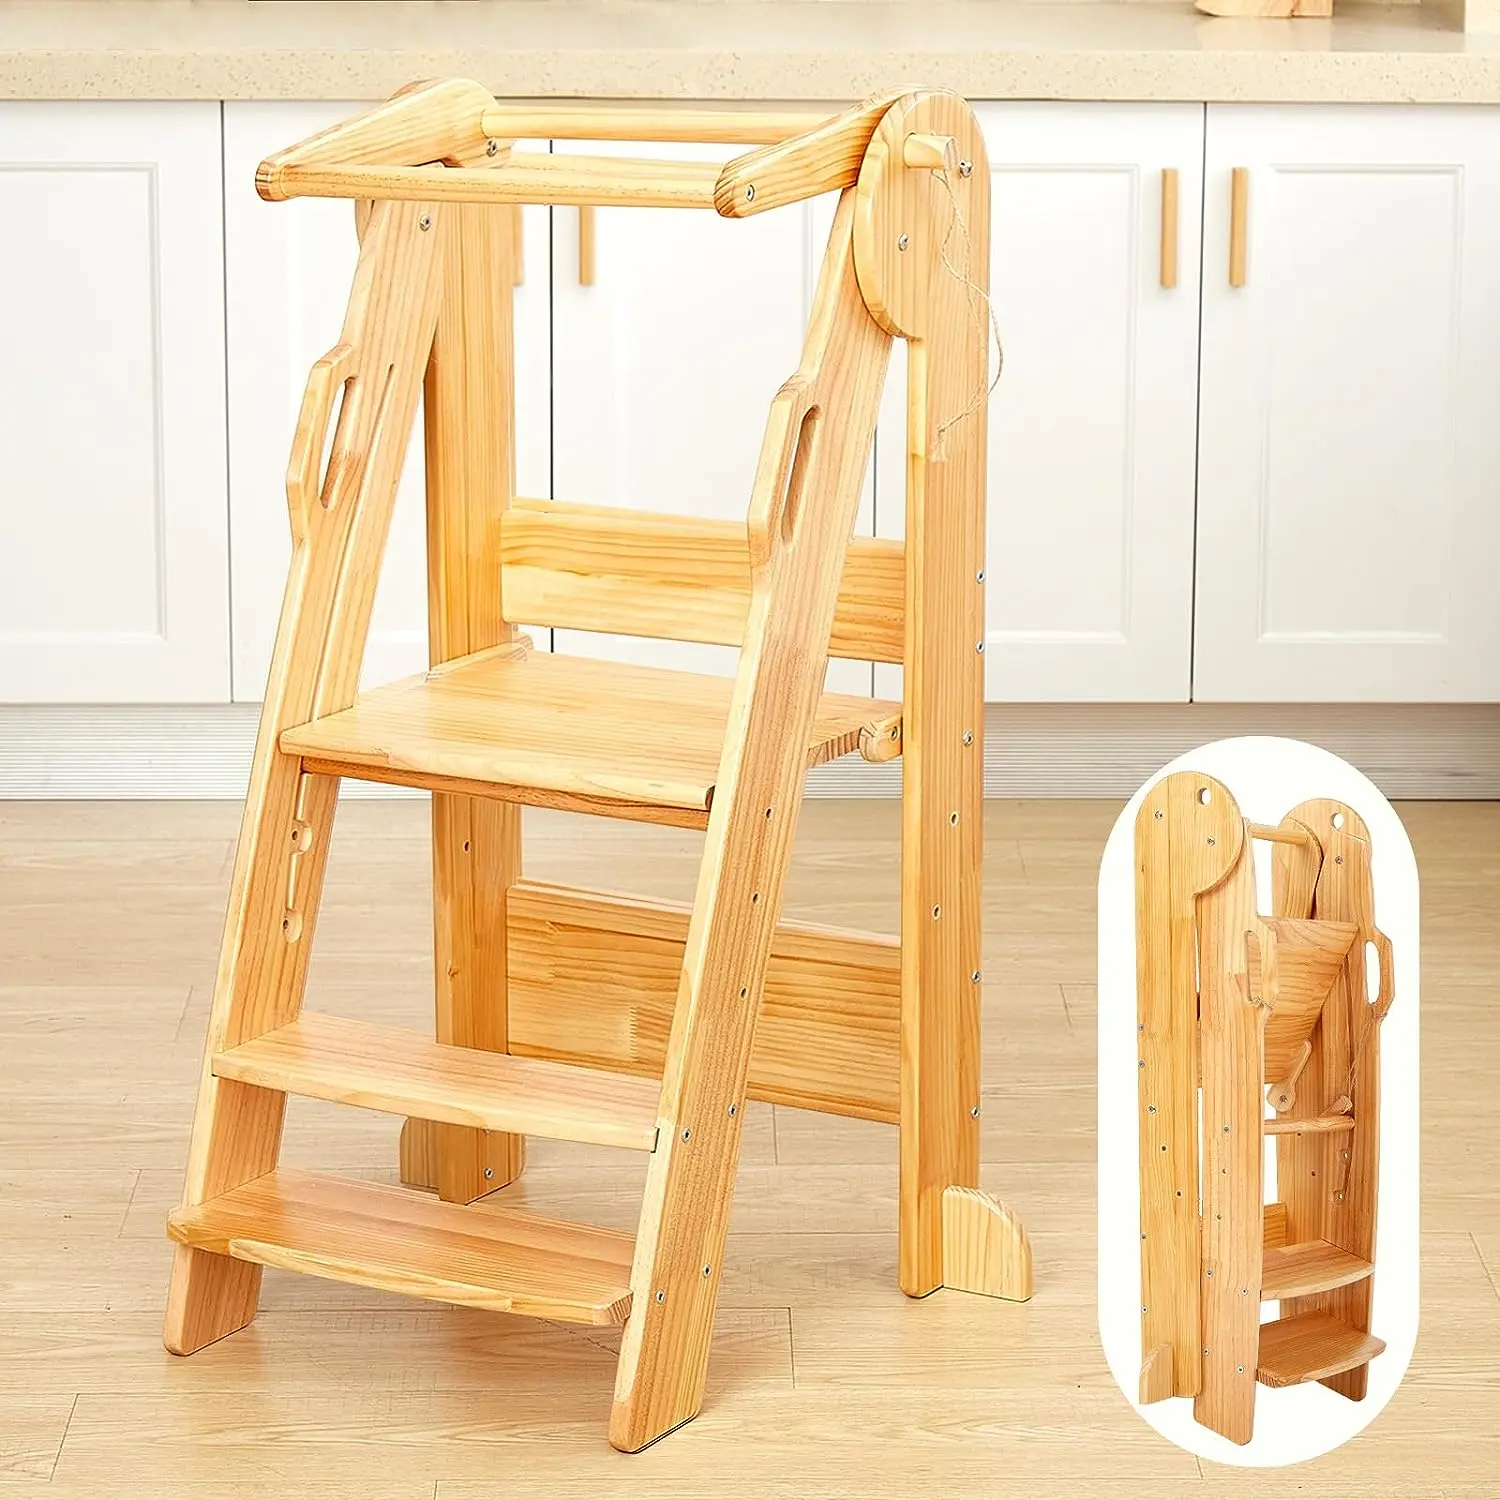 Faltbarer Holz-Küchen-Tritt hocker für Kinder 3-stufiger Holz-Kleinkind turm mit Sicherheits schienen Montessori Child Wood Standing Tower